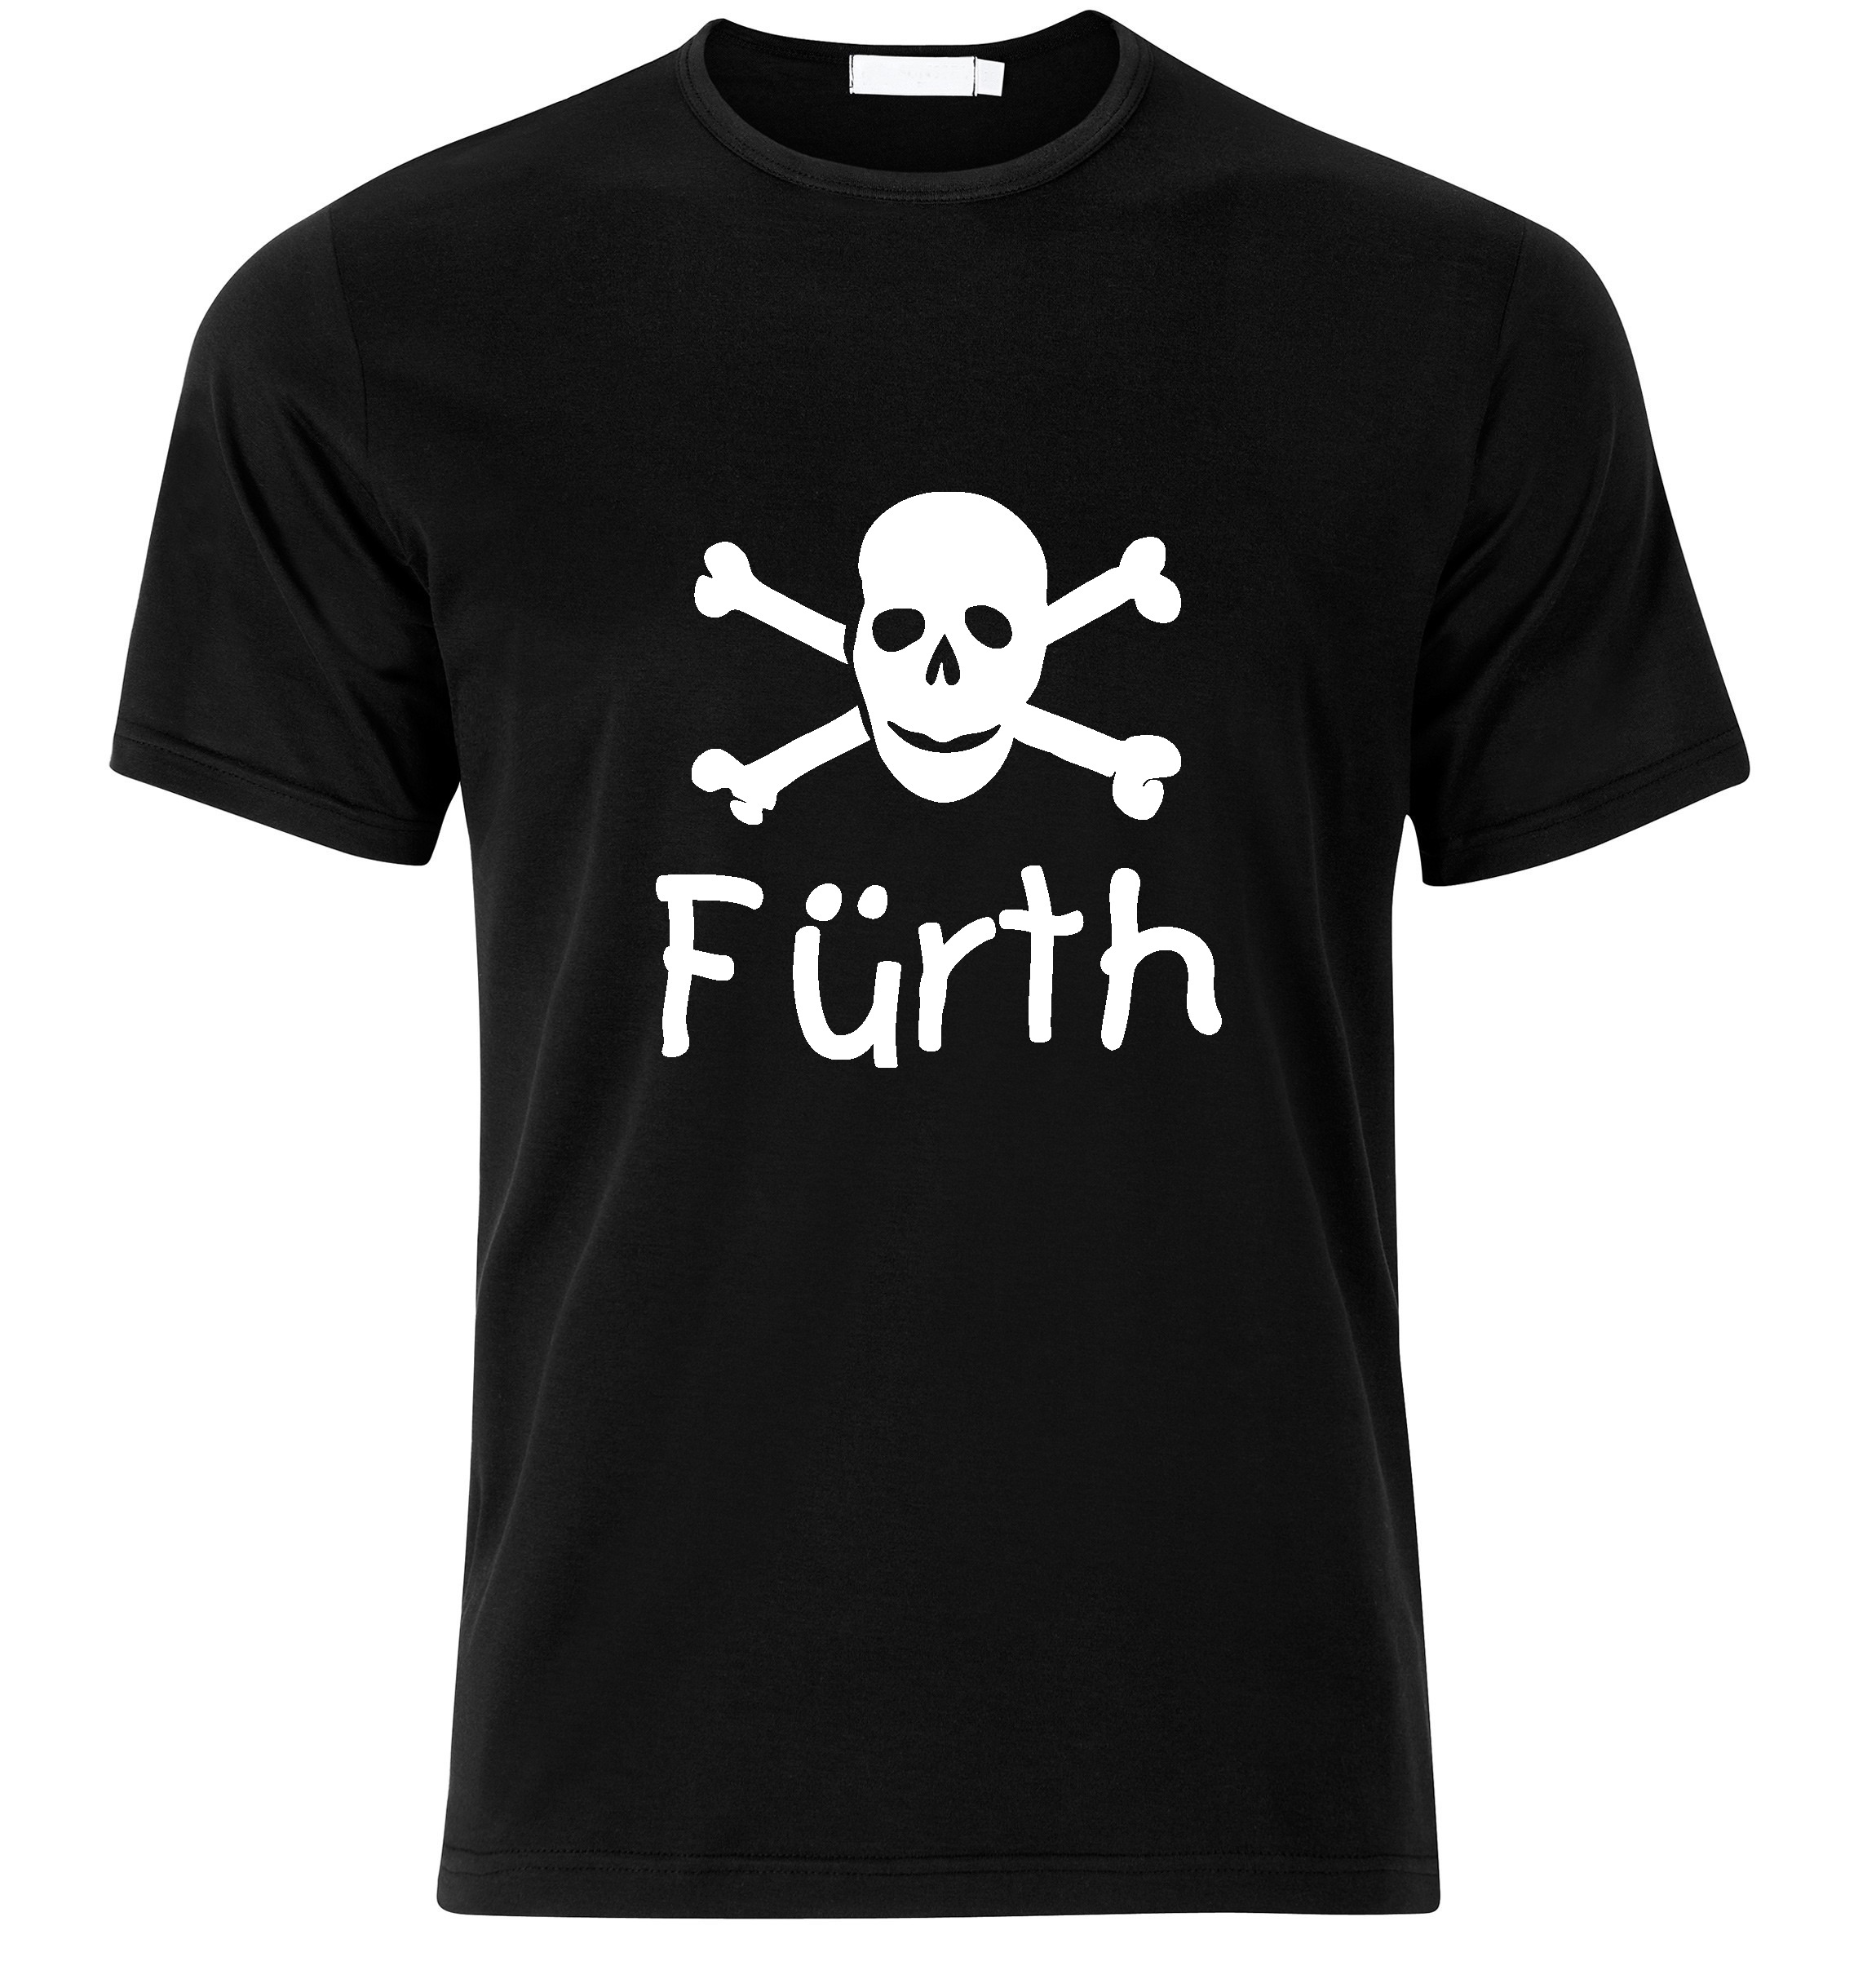 T-Shirt Fürth Jolly Roger, Totenkopf